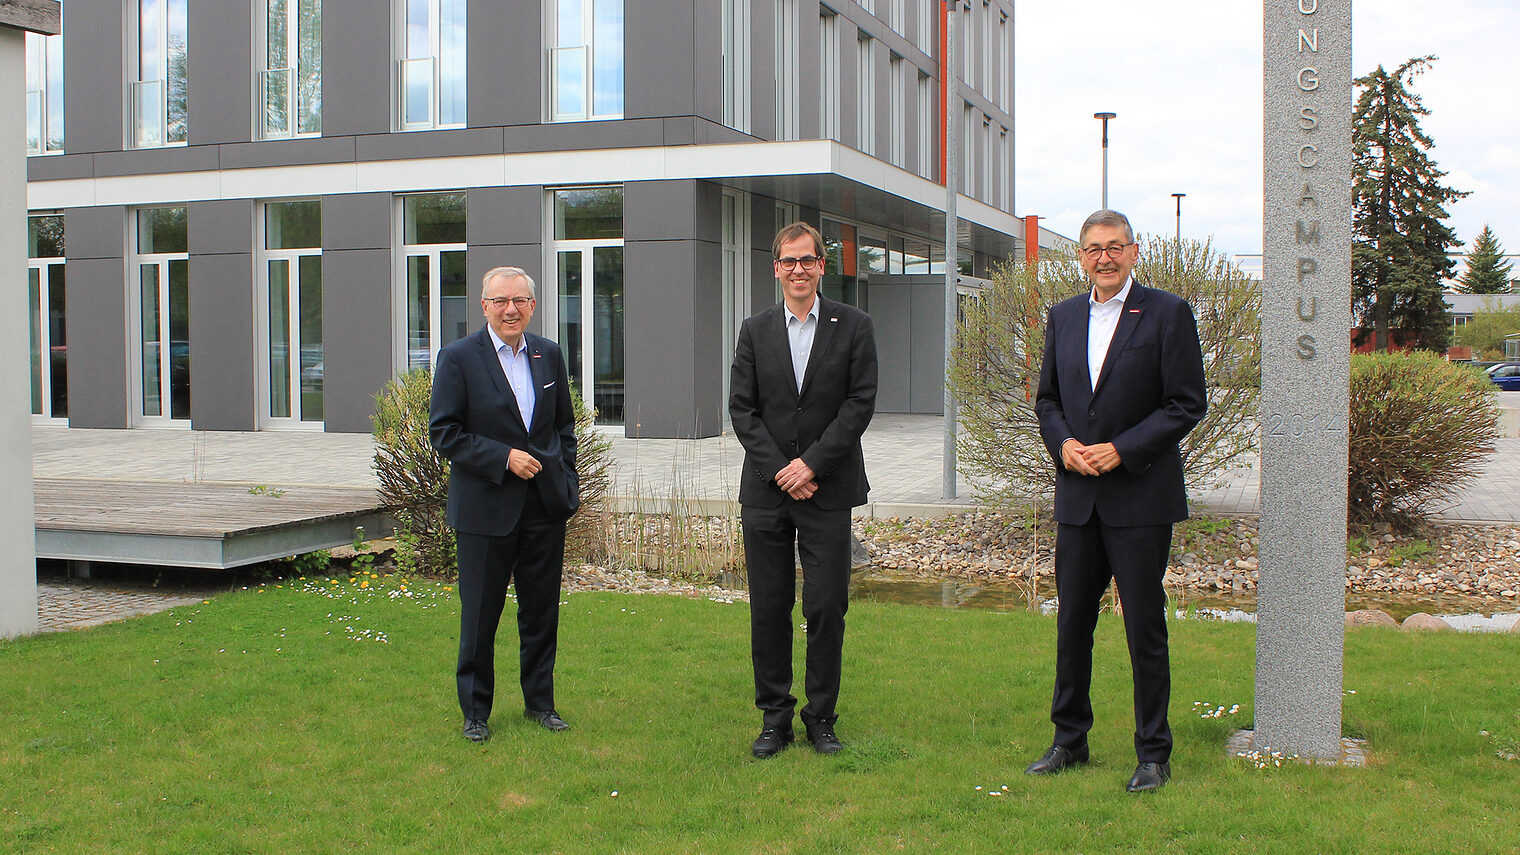 OTH Regensburg Prof. Dr. Ralph Schneider (Mitte) sprach mit Hauptgeschäftsführer Jürgen Kilger und Präsident Dr. Georg Haber wie wichtig die Zusammenarbeit auf Augenhöhe zwischen Wirtschaft und Wissenschaft ist. 